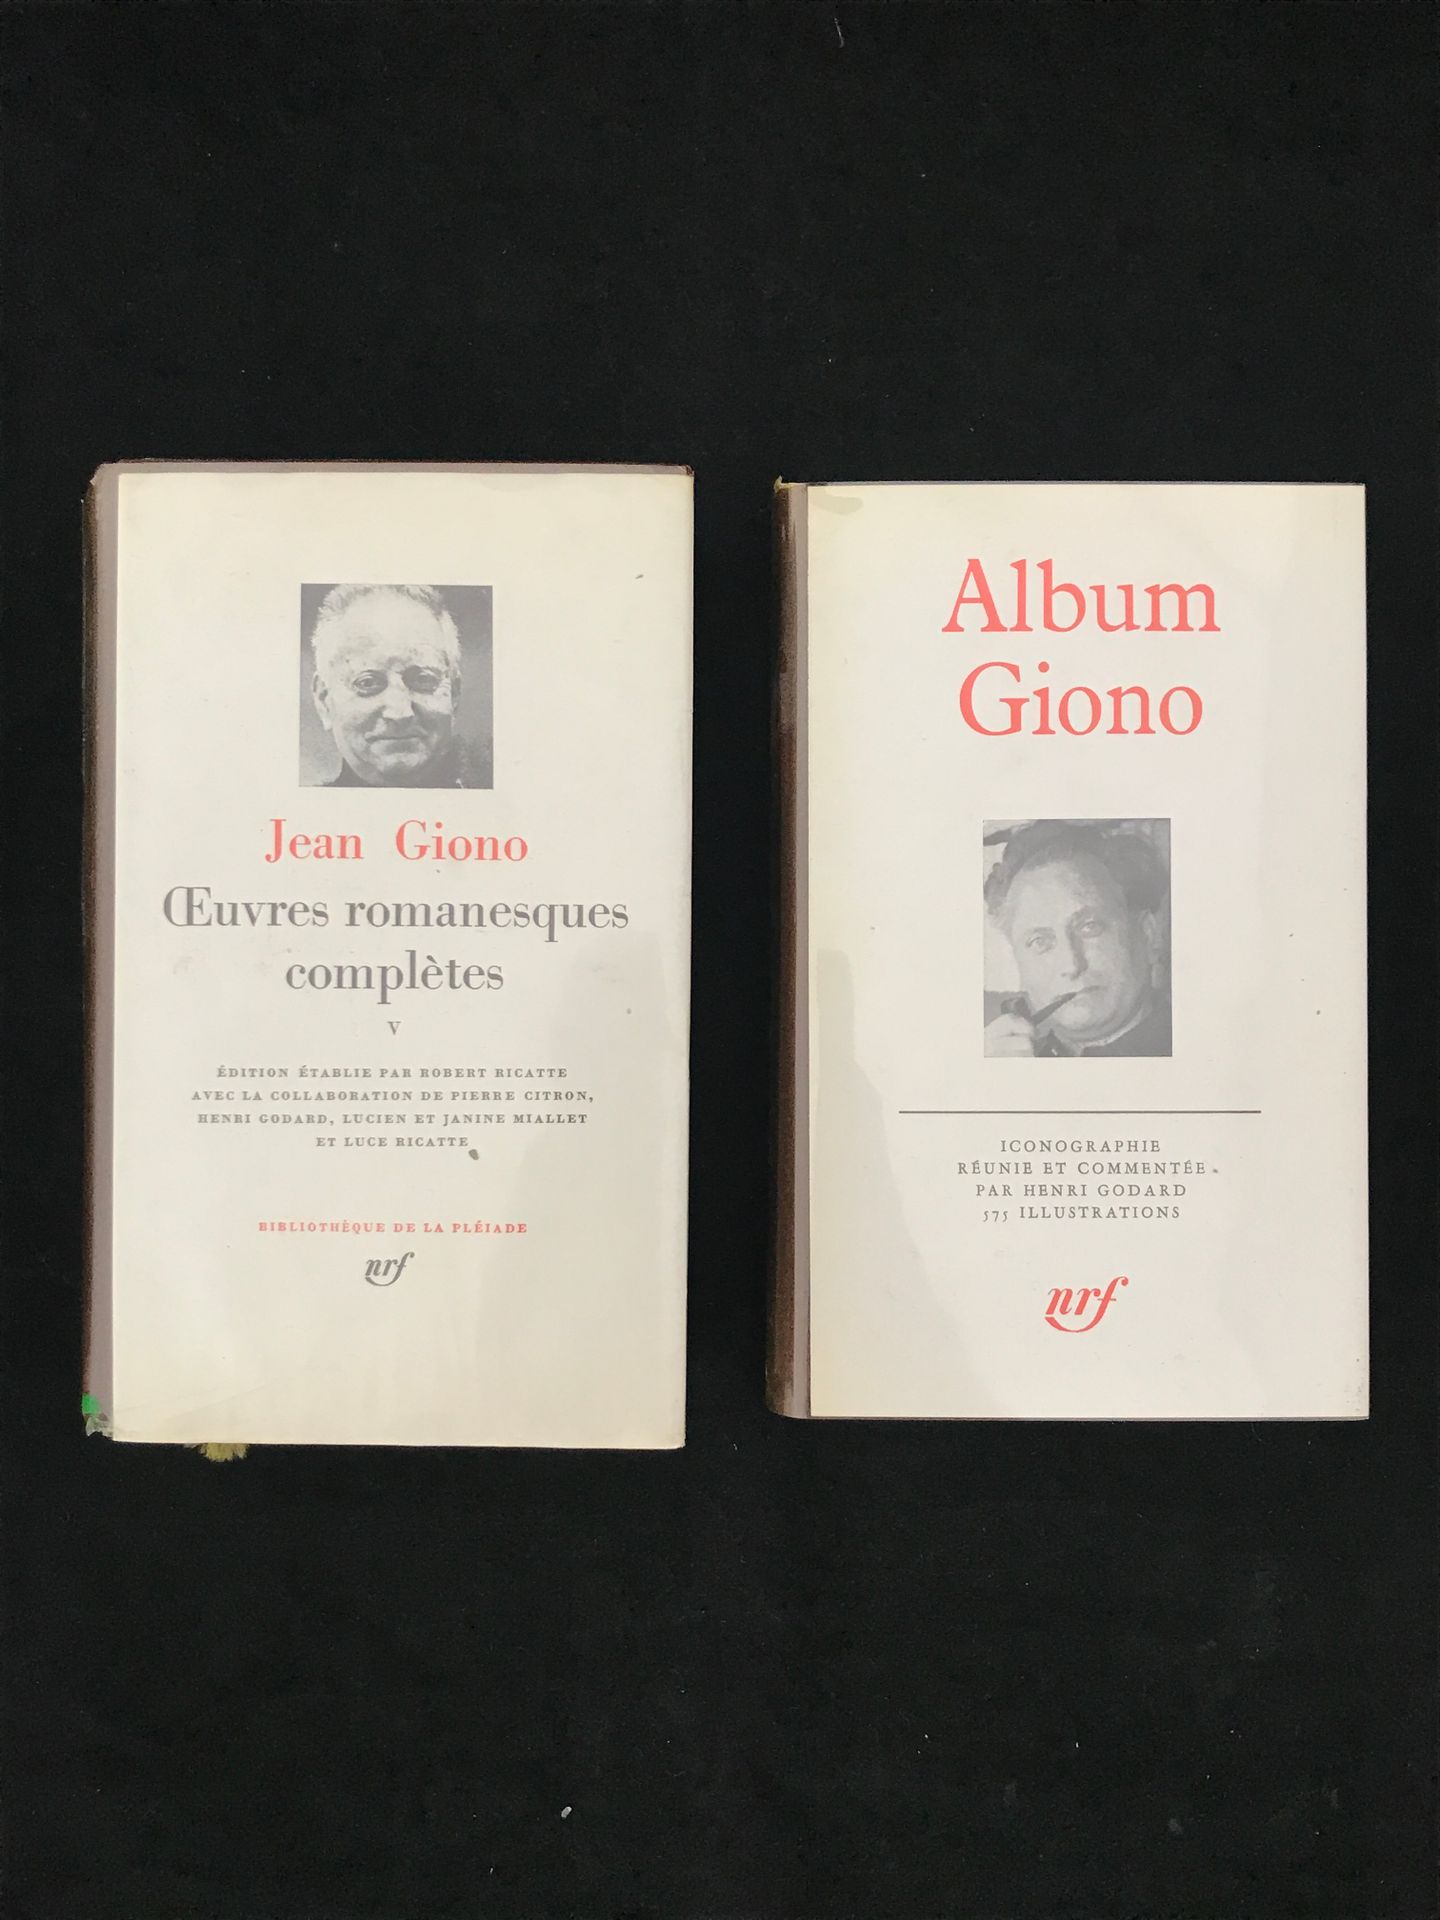 Null La Pléiade》，一套两册，包括。

- Jean GIONO, "Œuvres Romanesques complètes" (缺少封面)

&hellip;